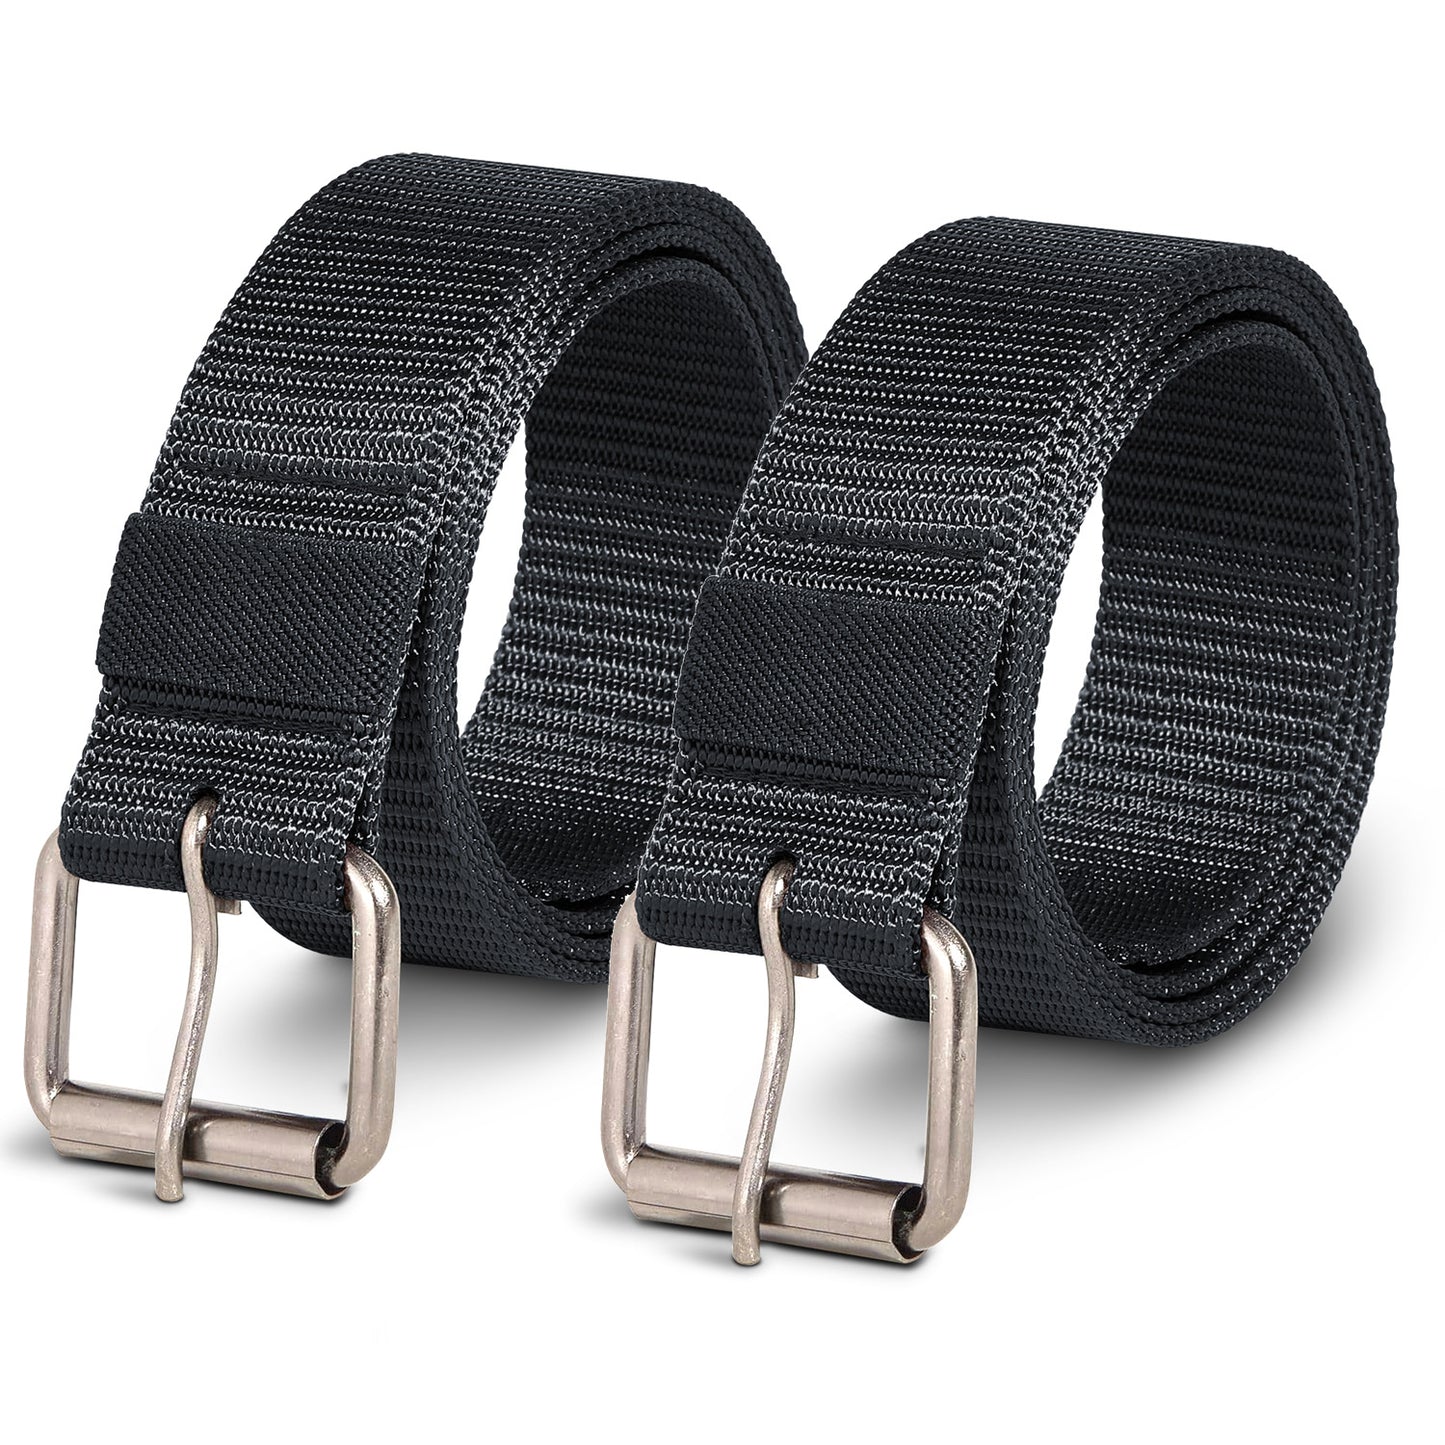 metal buckle belt